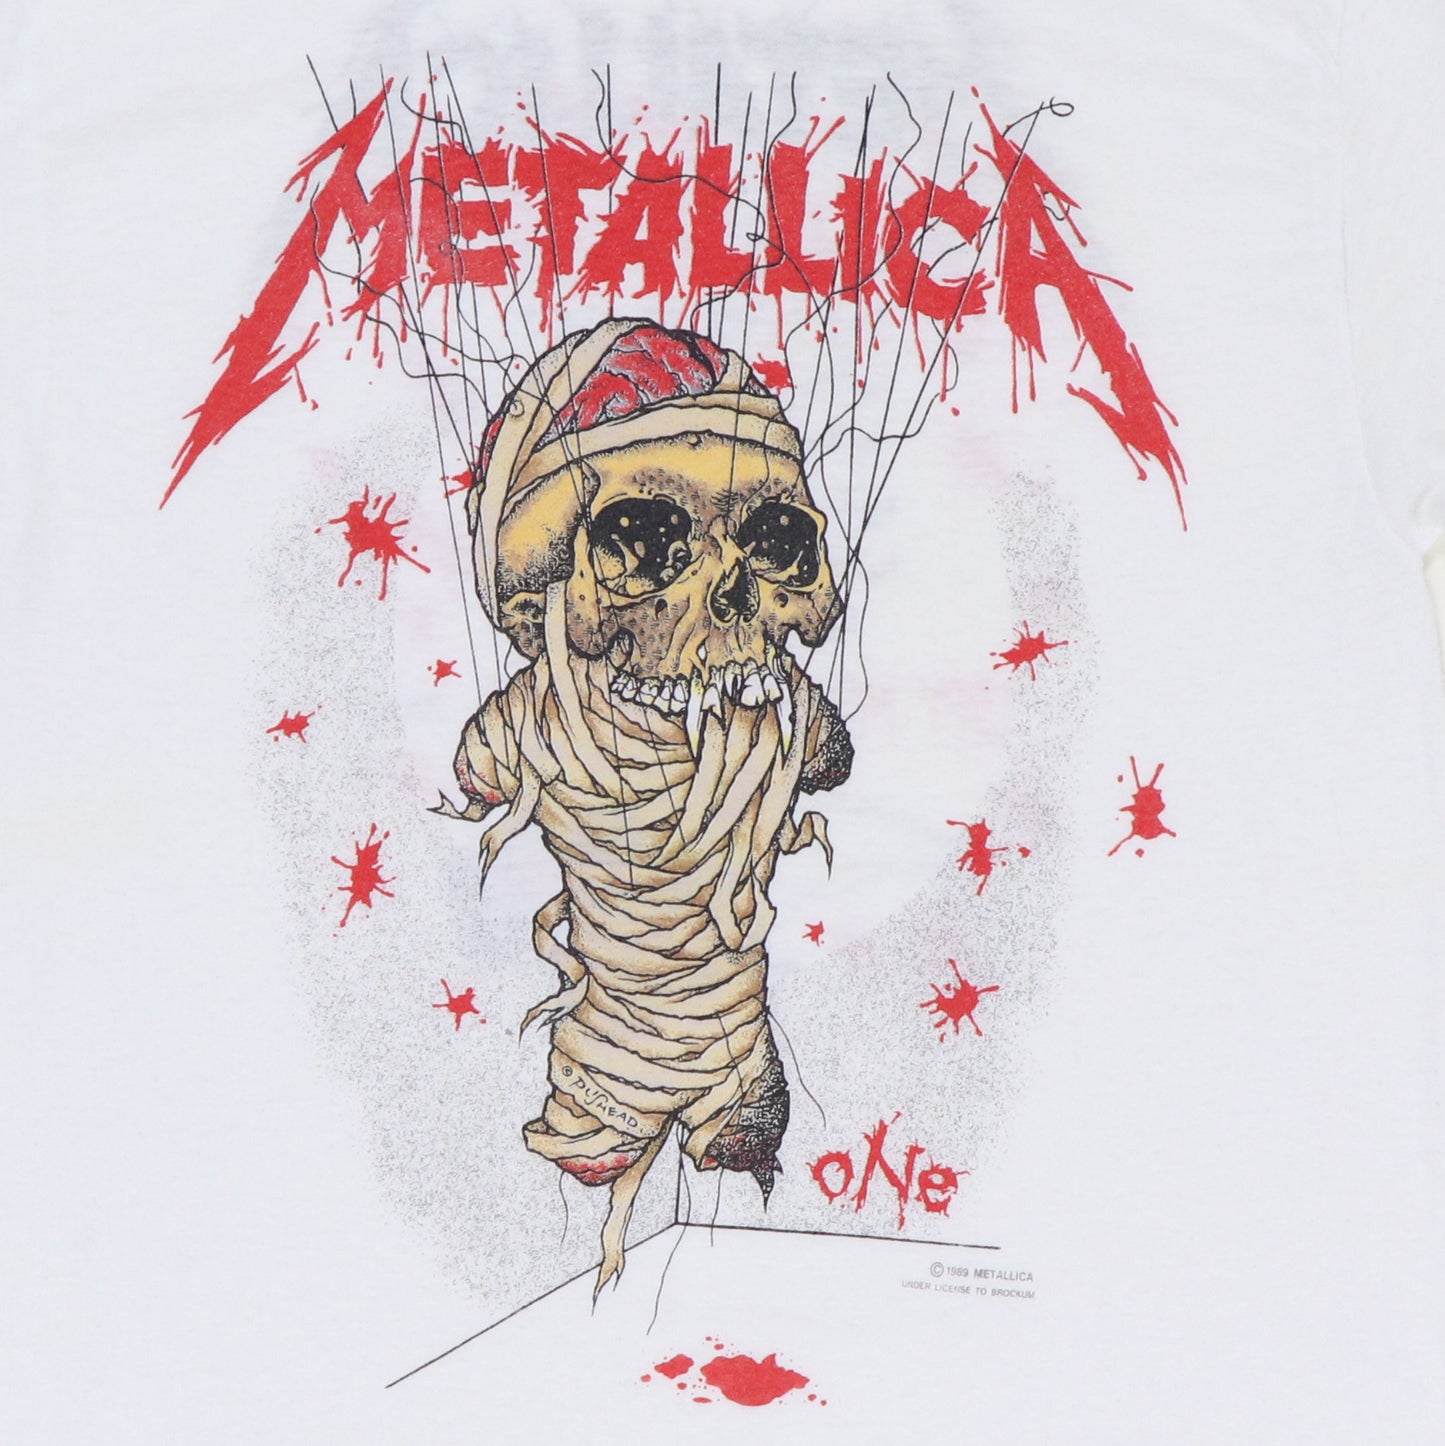 1989 Metallica One Pushead Shirt